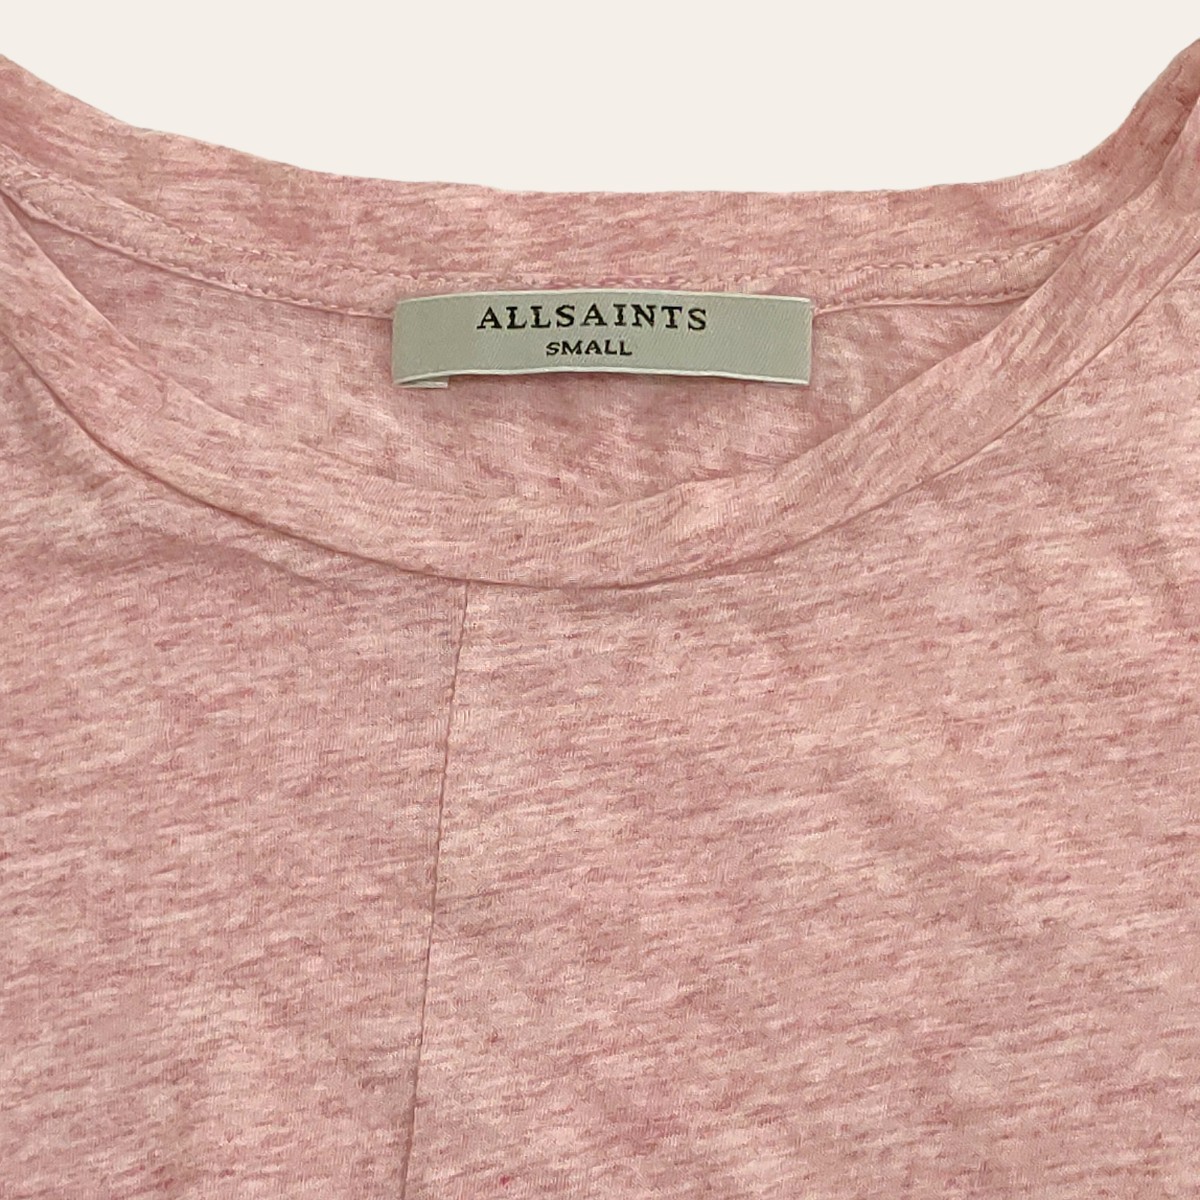 ALLSAINTS / все Saints женский футболка * cut and sewn диафрагмирования дизайн розовый короткий 160/80A размер Portugal производства I-2211